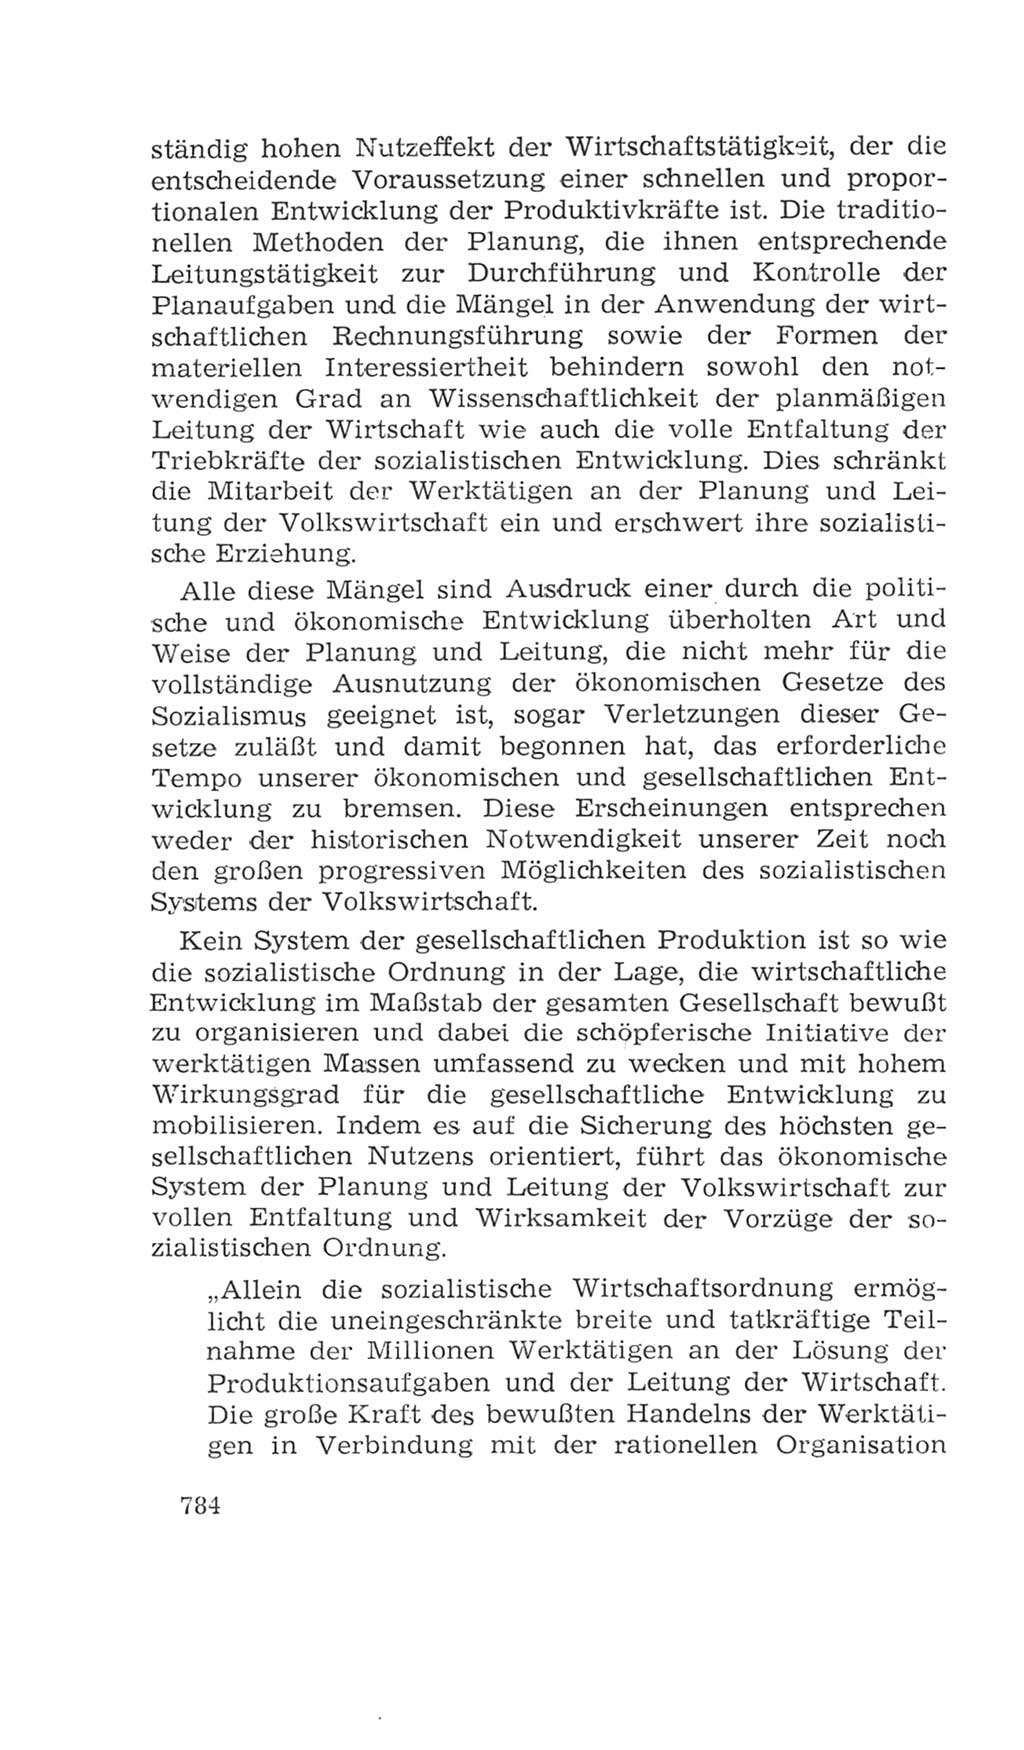 Volkskammer (VK) der Deutschen Demokratischen Republik (DDR), 4. Wahlperiode 1963-1967, Seite 784 (VK. DDR 4. WP. 1963-1967, S. 784)